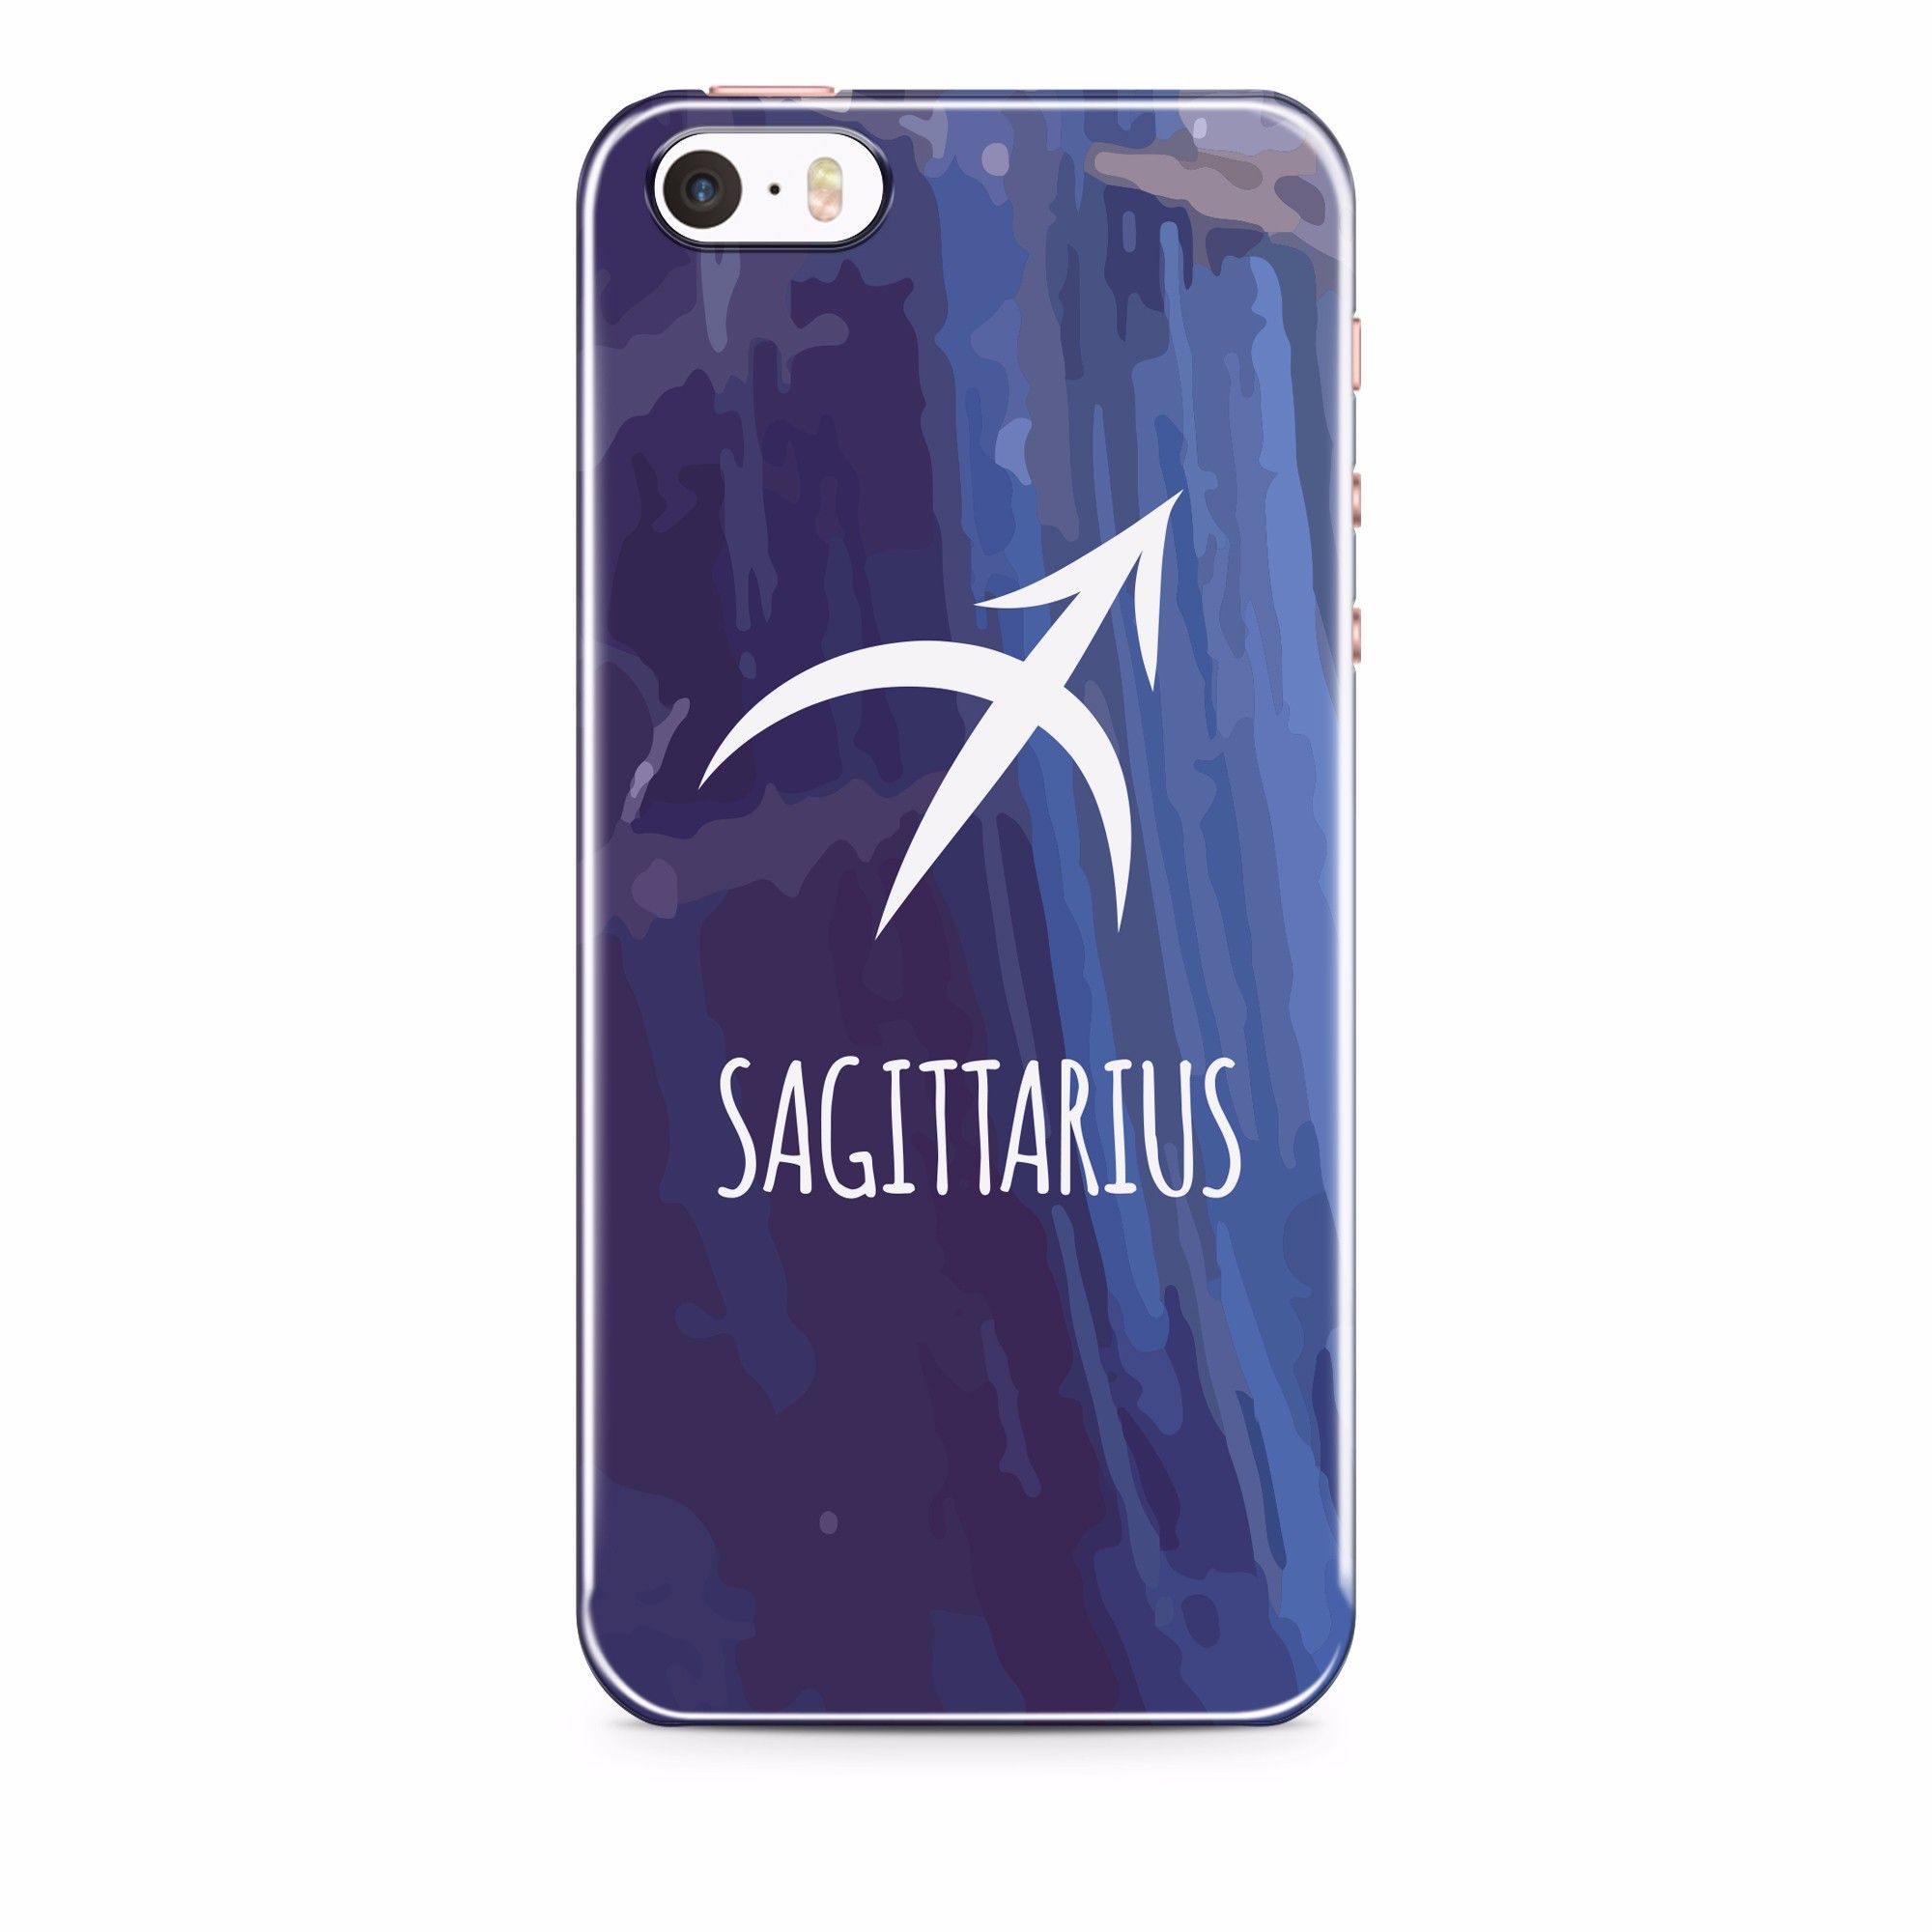  Sagittarius - Iphone 5,5s,SE 